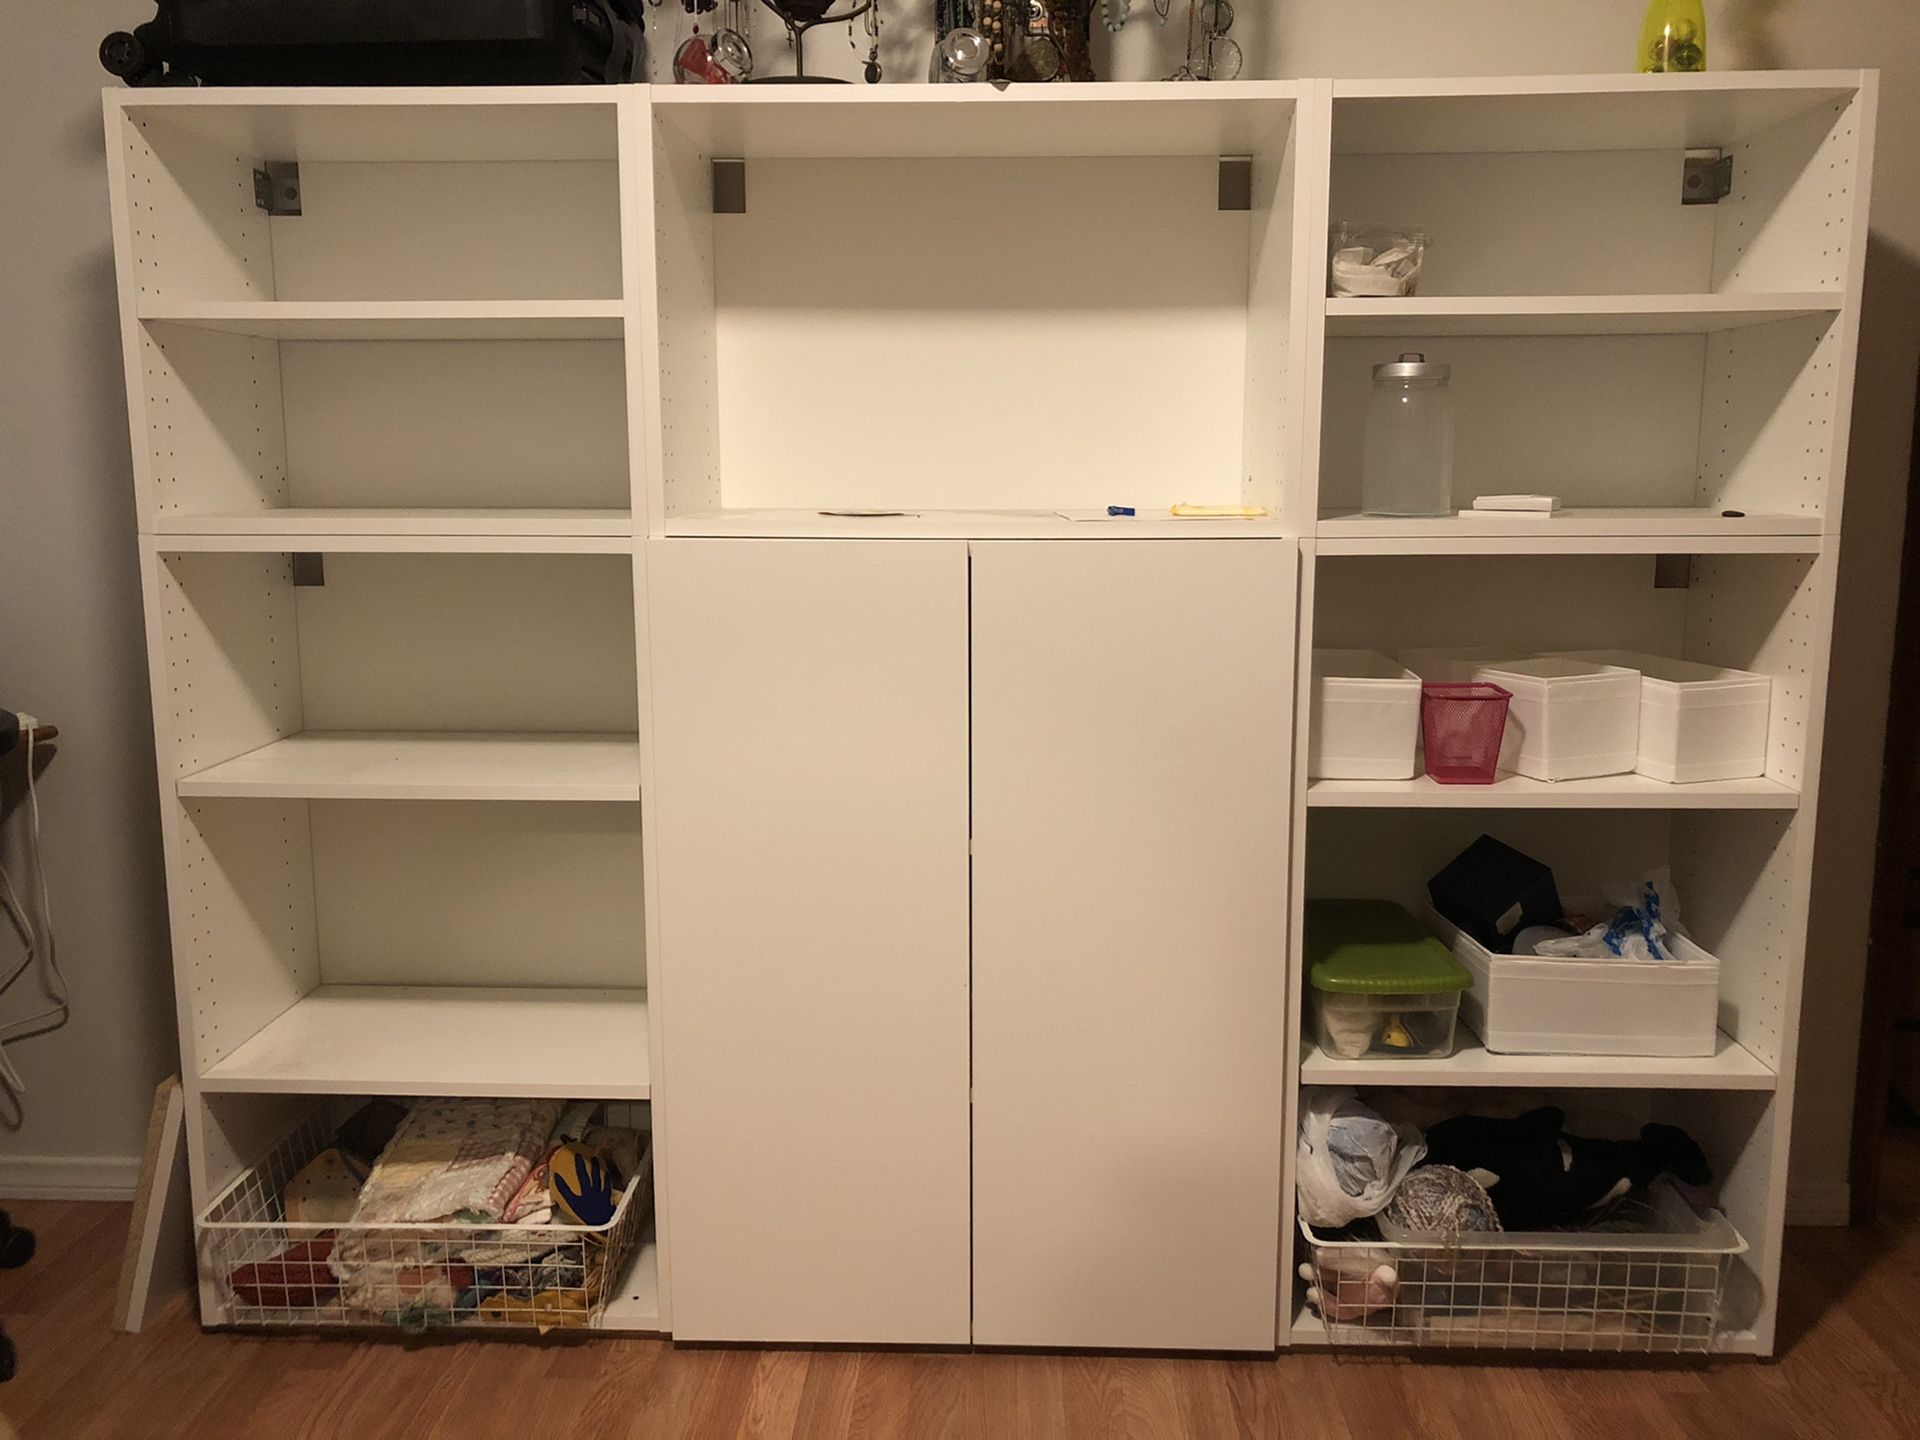 Custom Ikea bookcase/shelves in white